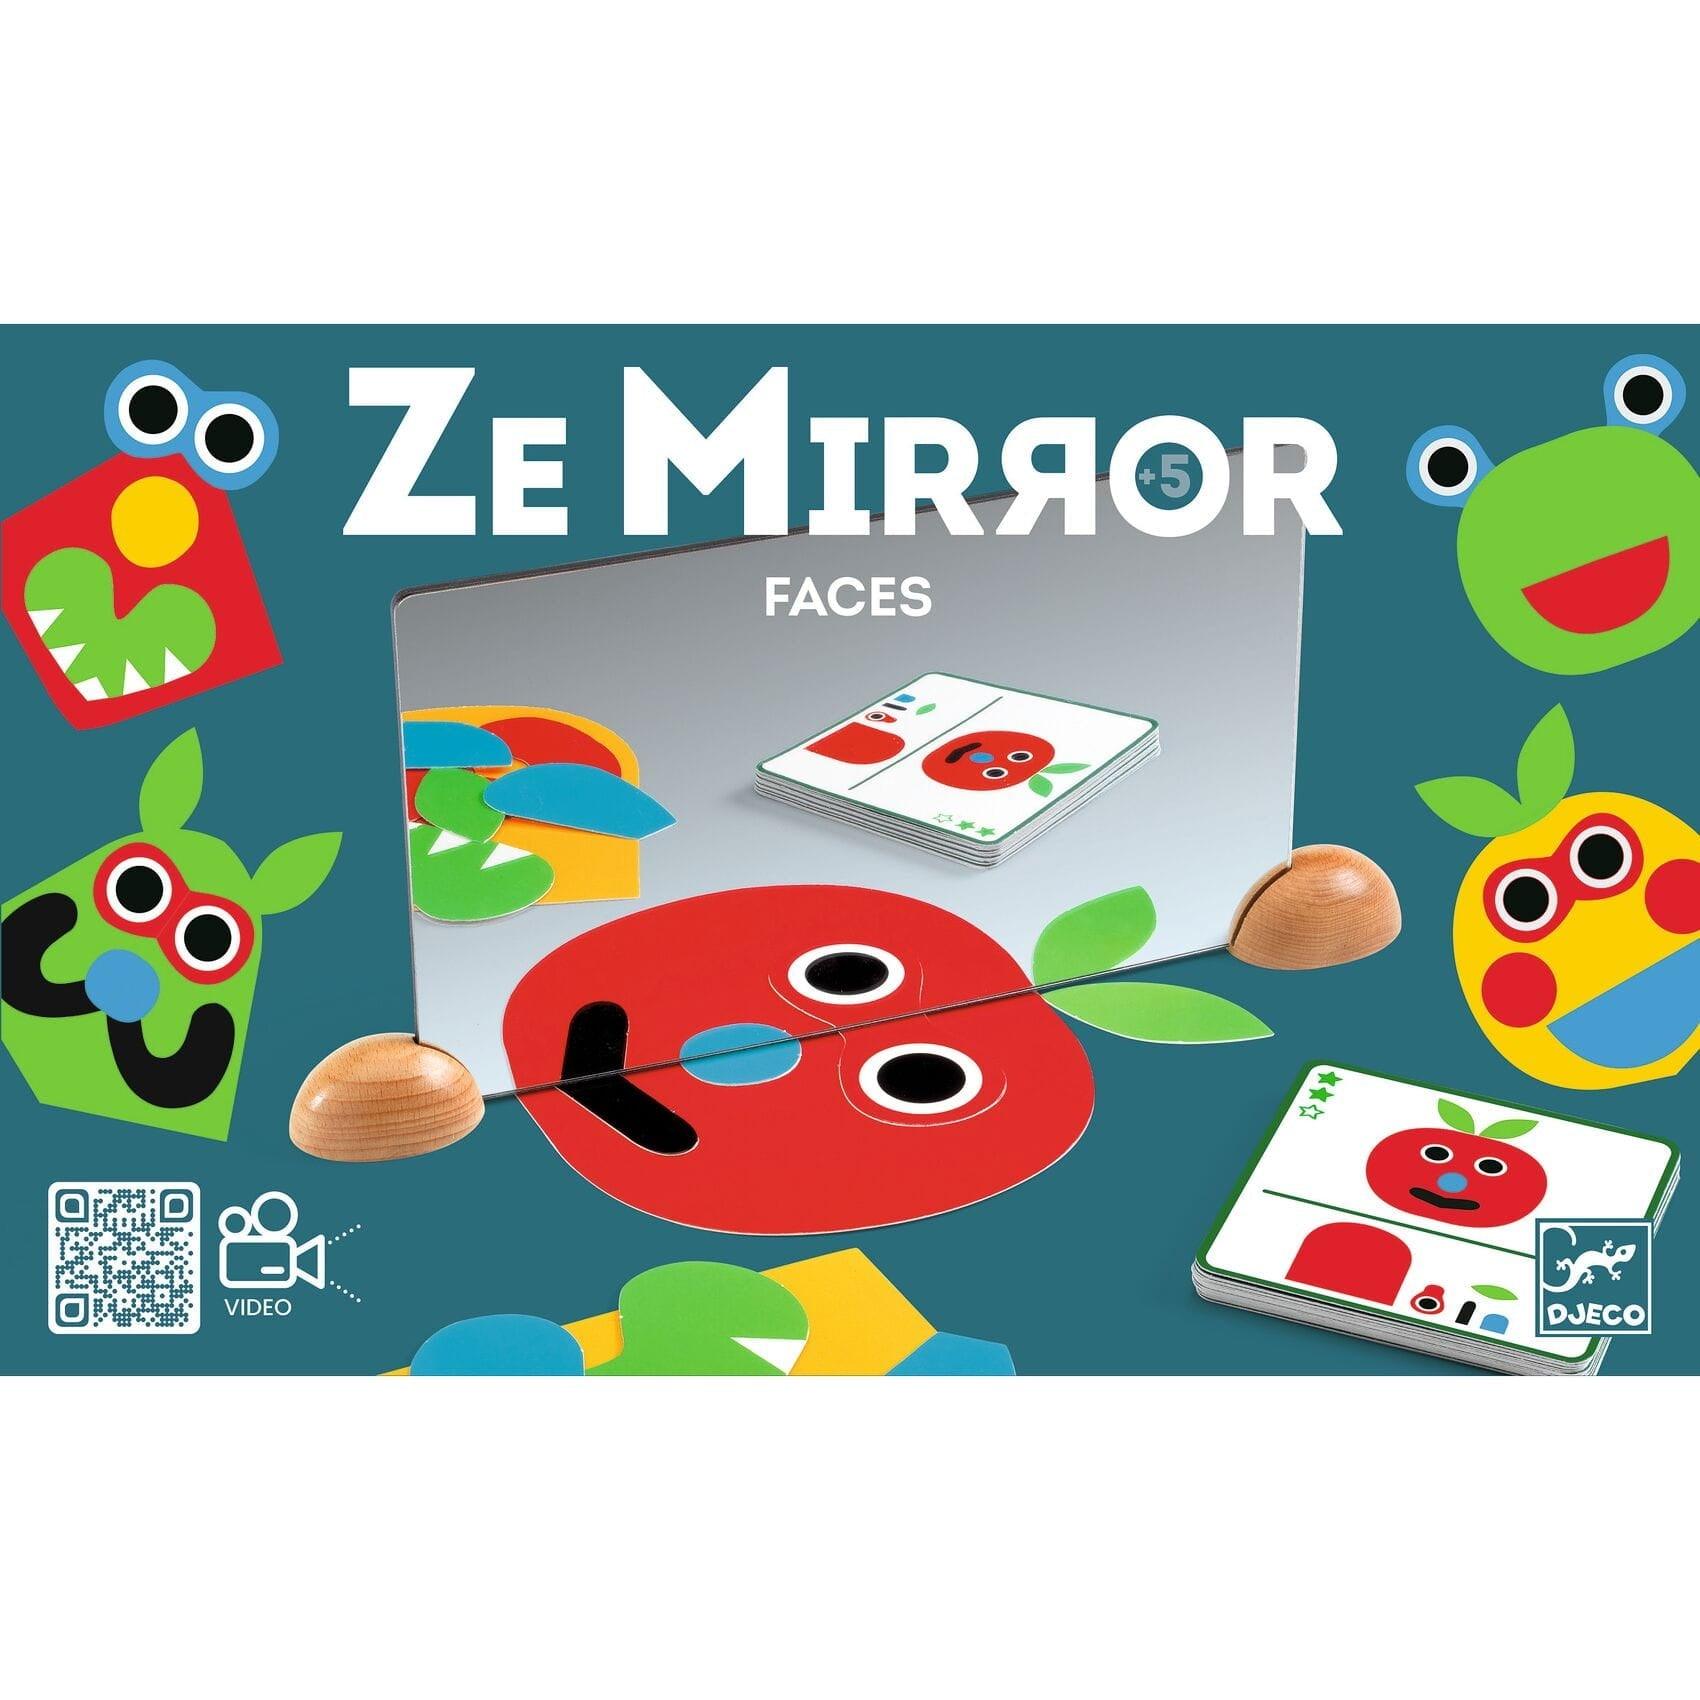 Djeco: zestaw edukacyjny odbicie lustrzane Ze Mirror Faces - Noski Noski